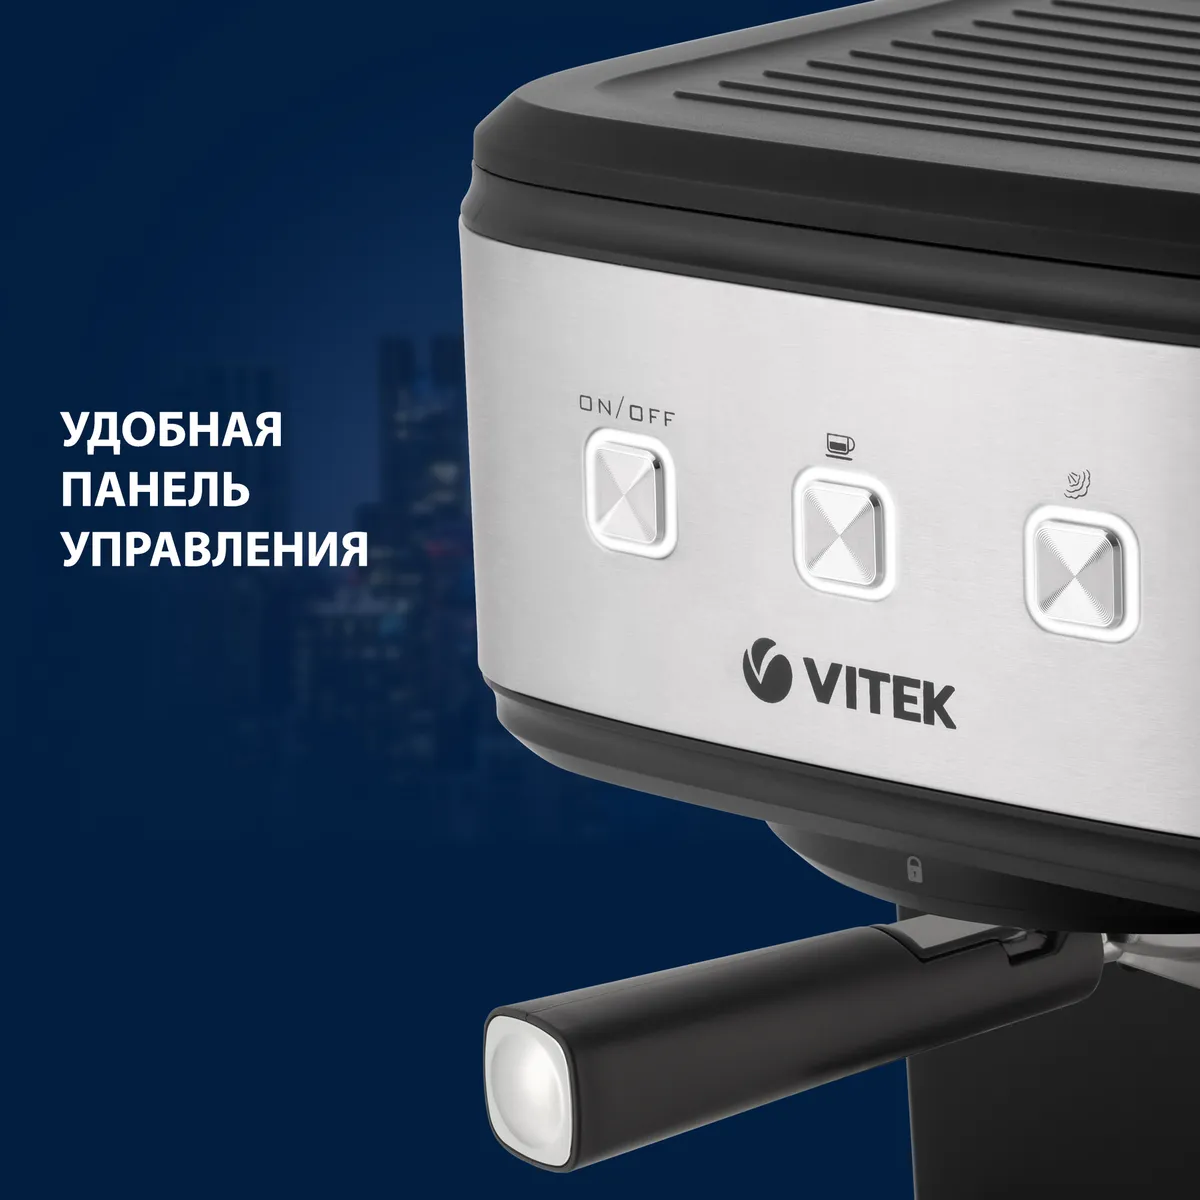 Автоматическая кофемашина Vitek VT-8470, серый металлик, черный  #6